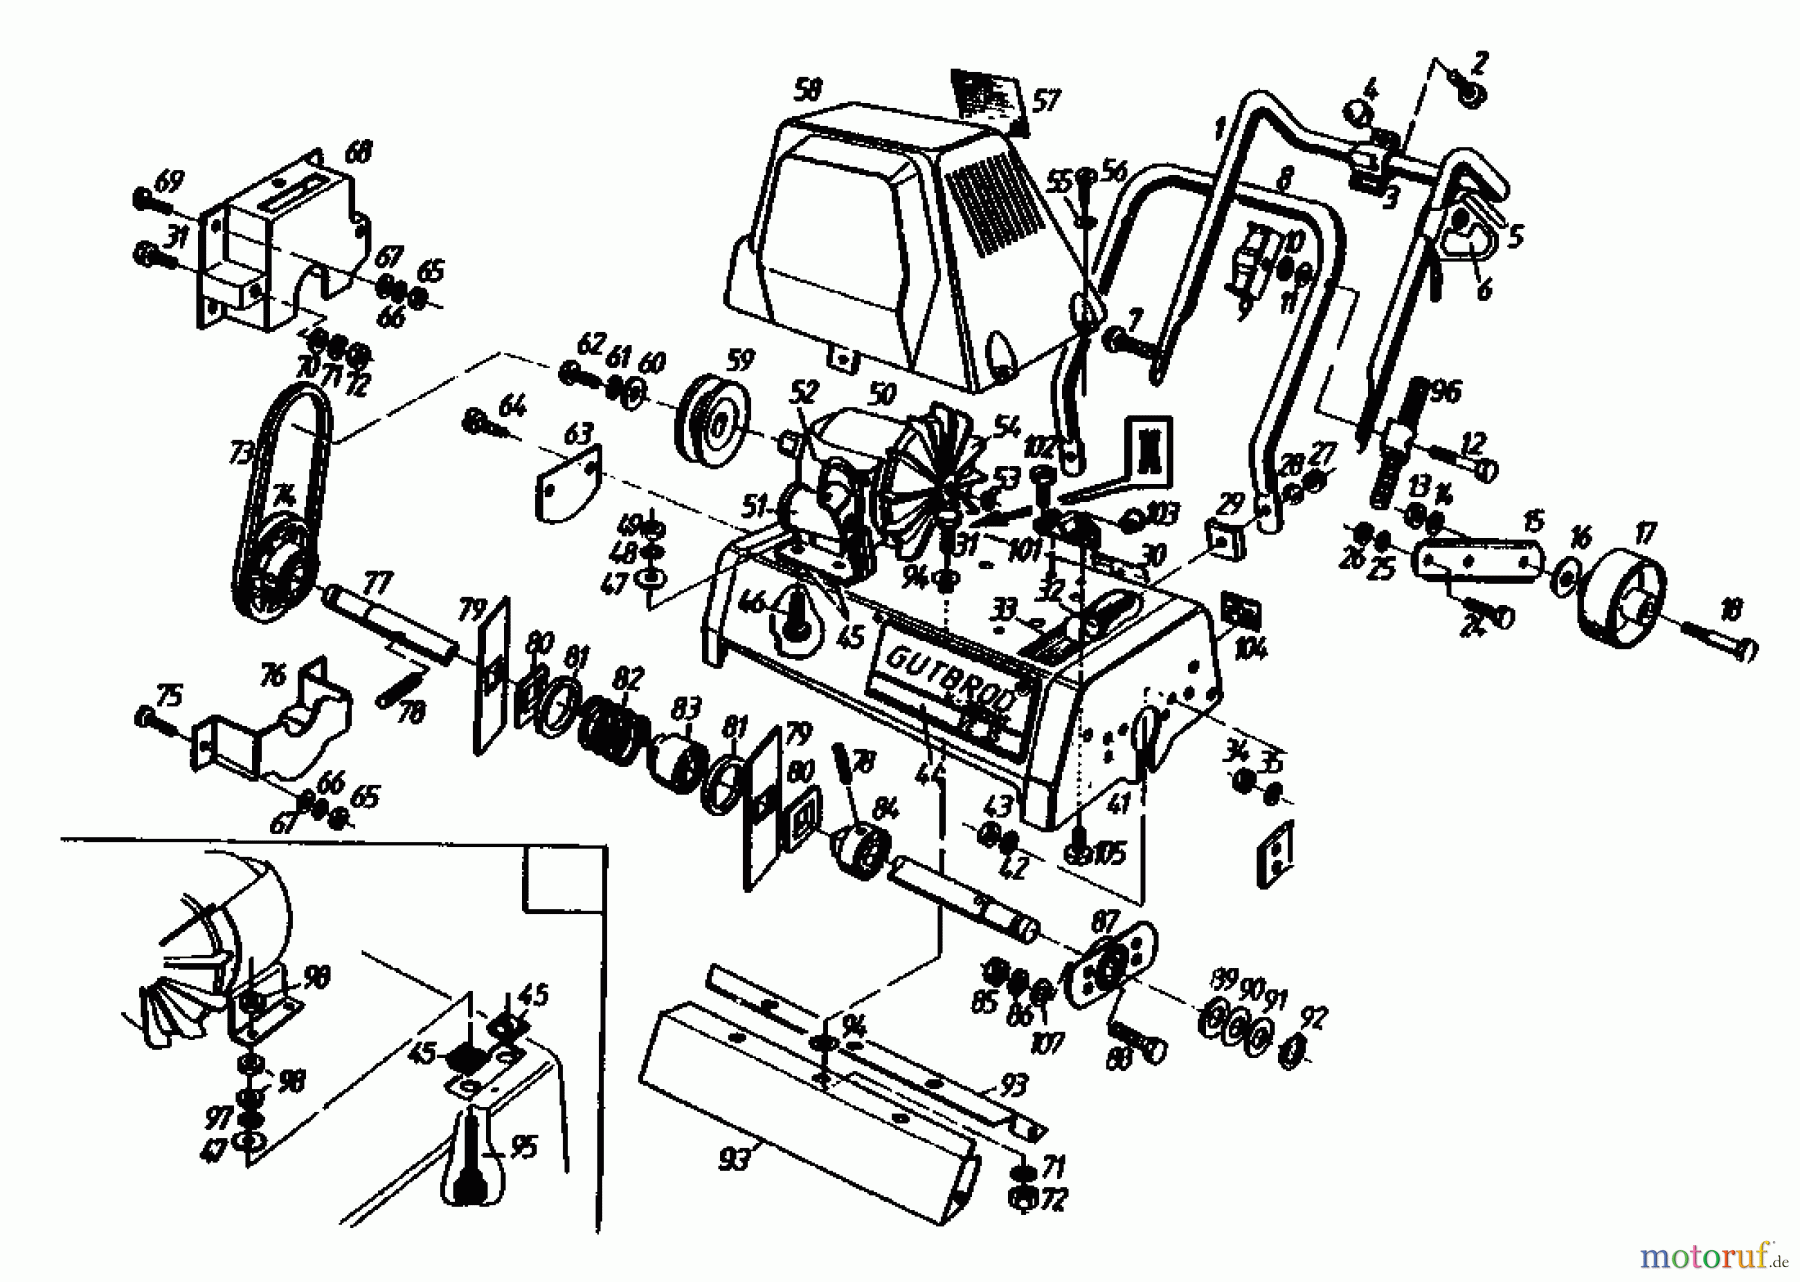  Gutbrod Scarificateur électrique VE 35 02645.09  (1990) Machine de base